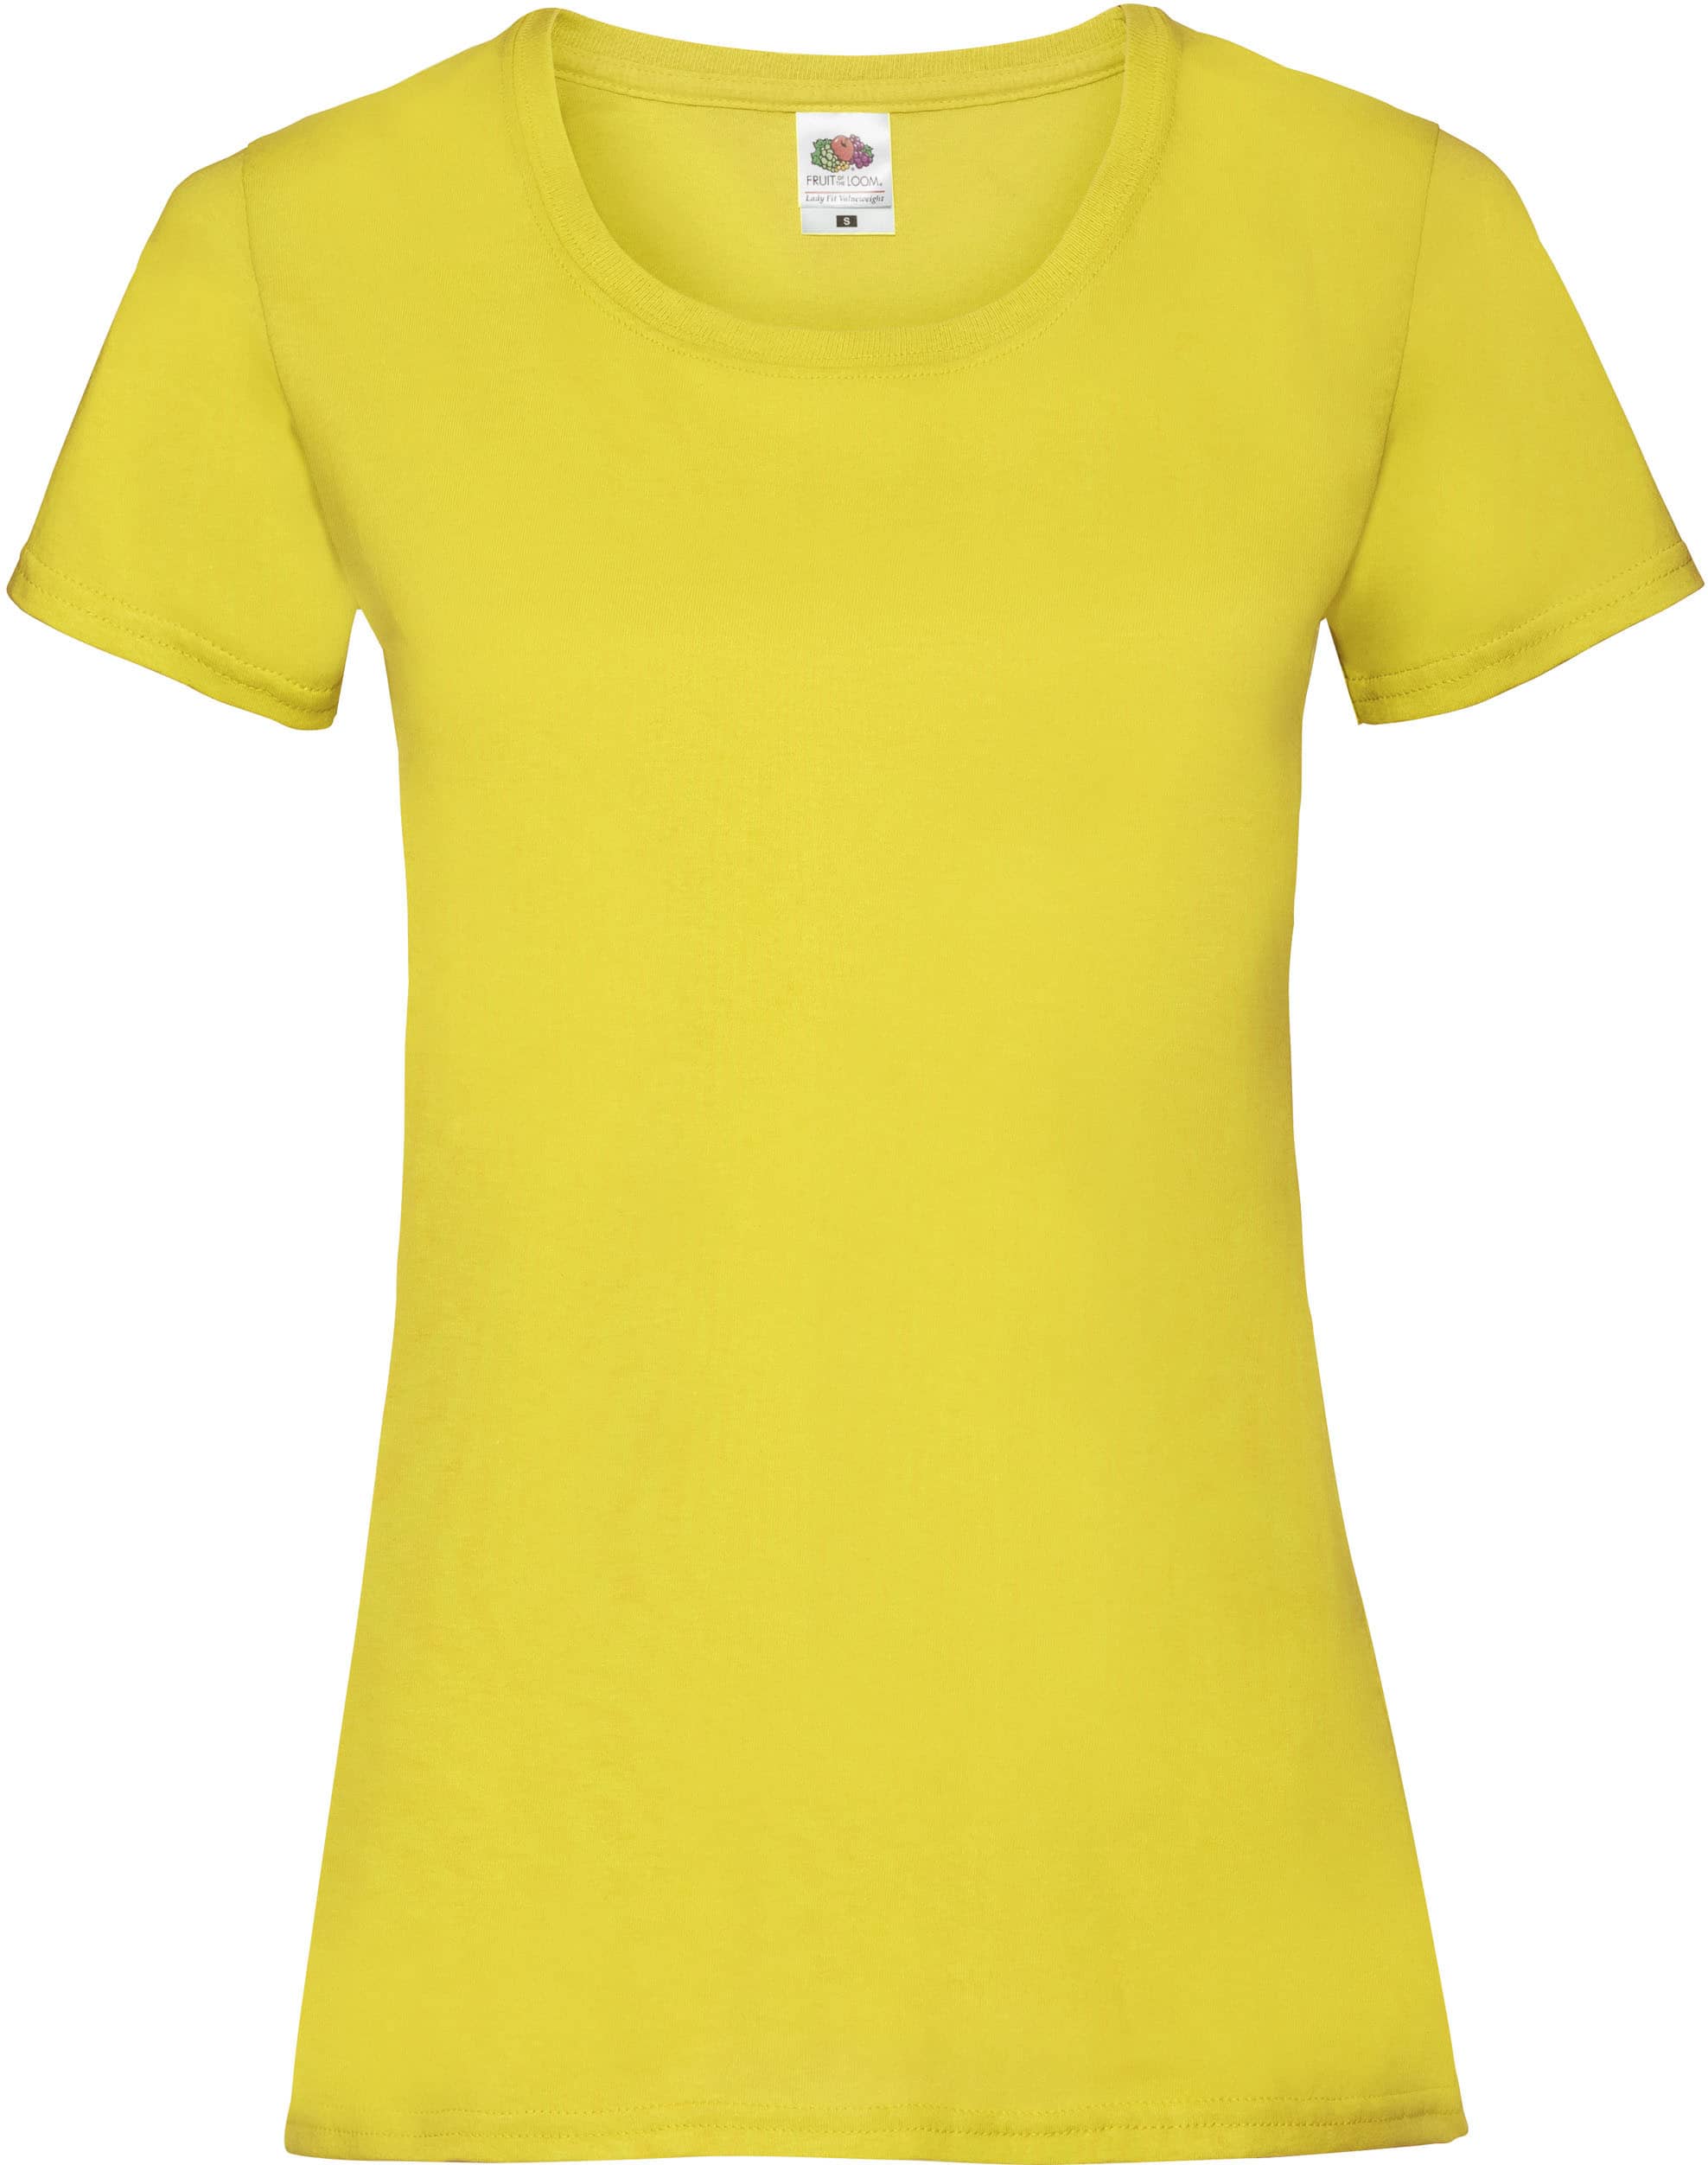 camiseta_personalizada_sc61372_amarillo_1 (1)